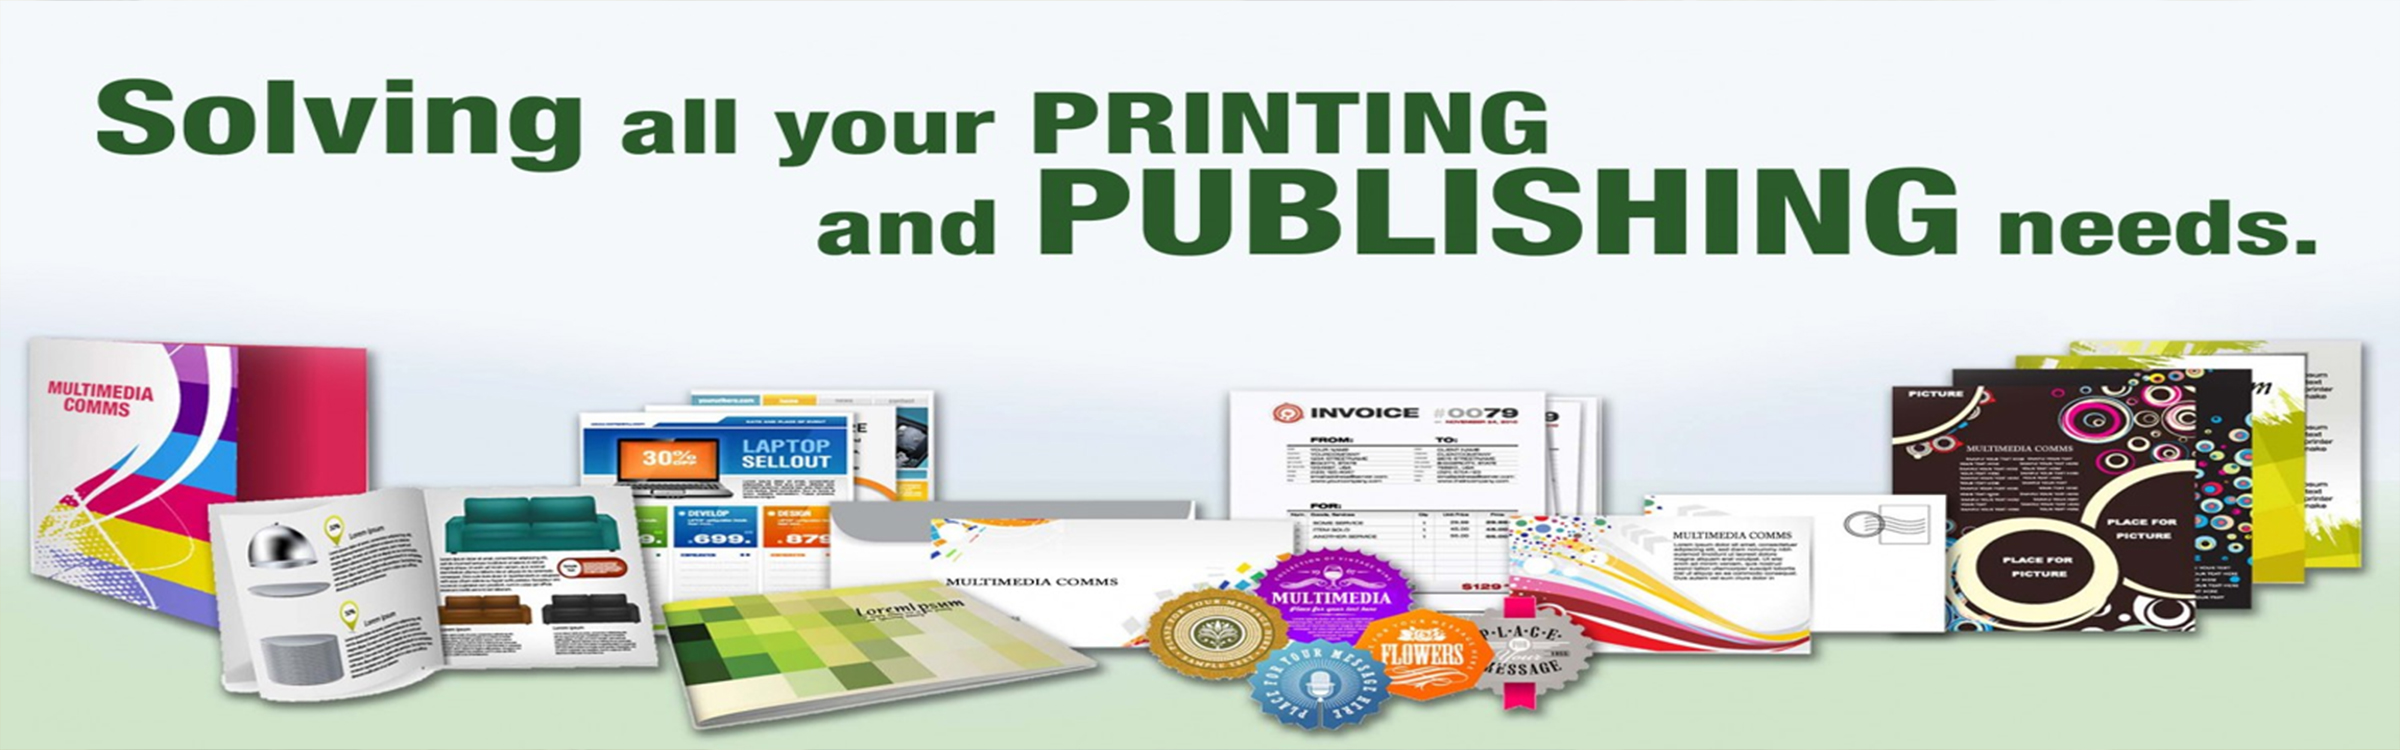 E-Publishing